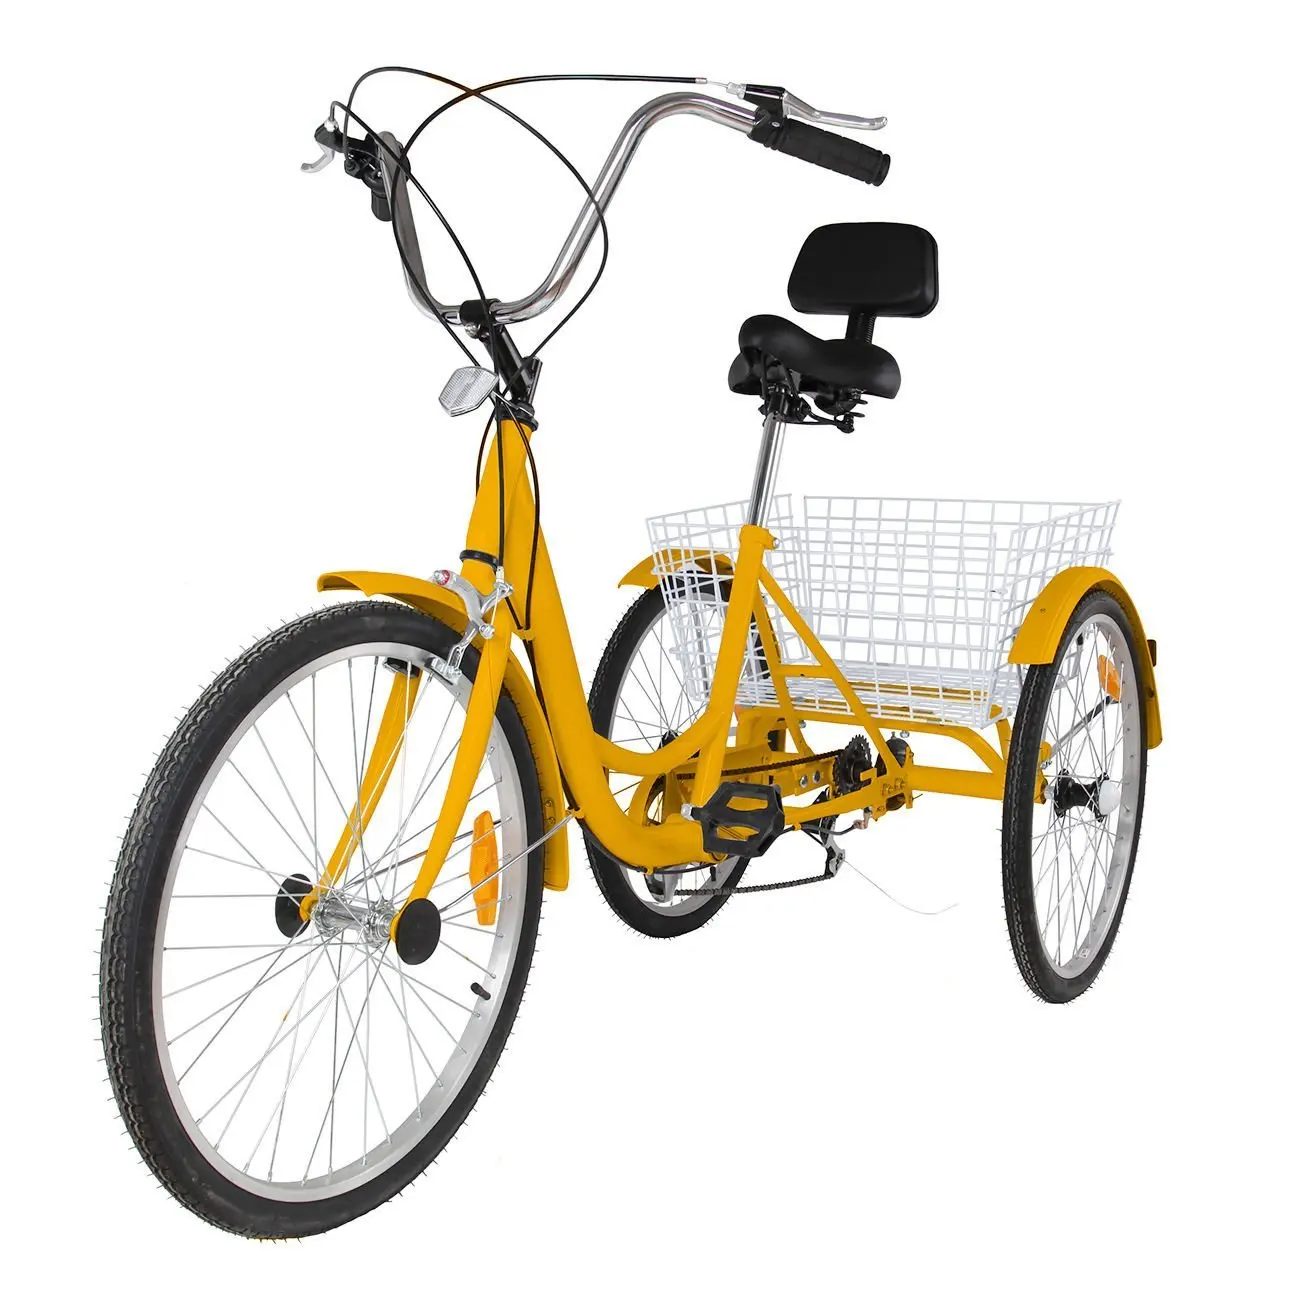 merax 26 inch 3 wheel bike adult tricycle trike cruise bike